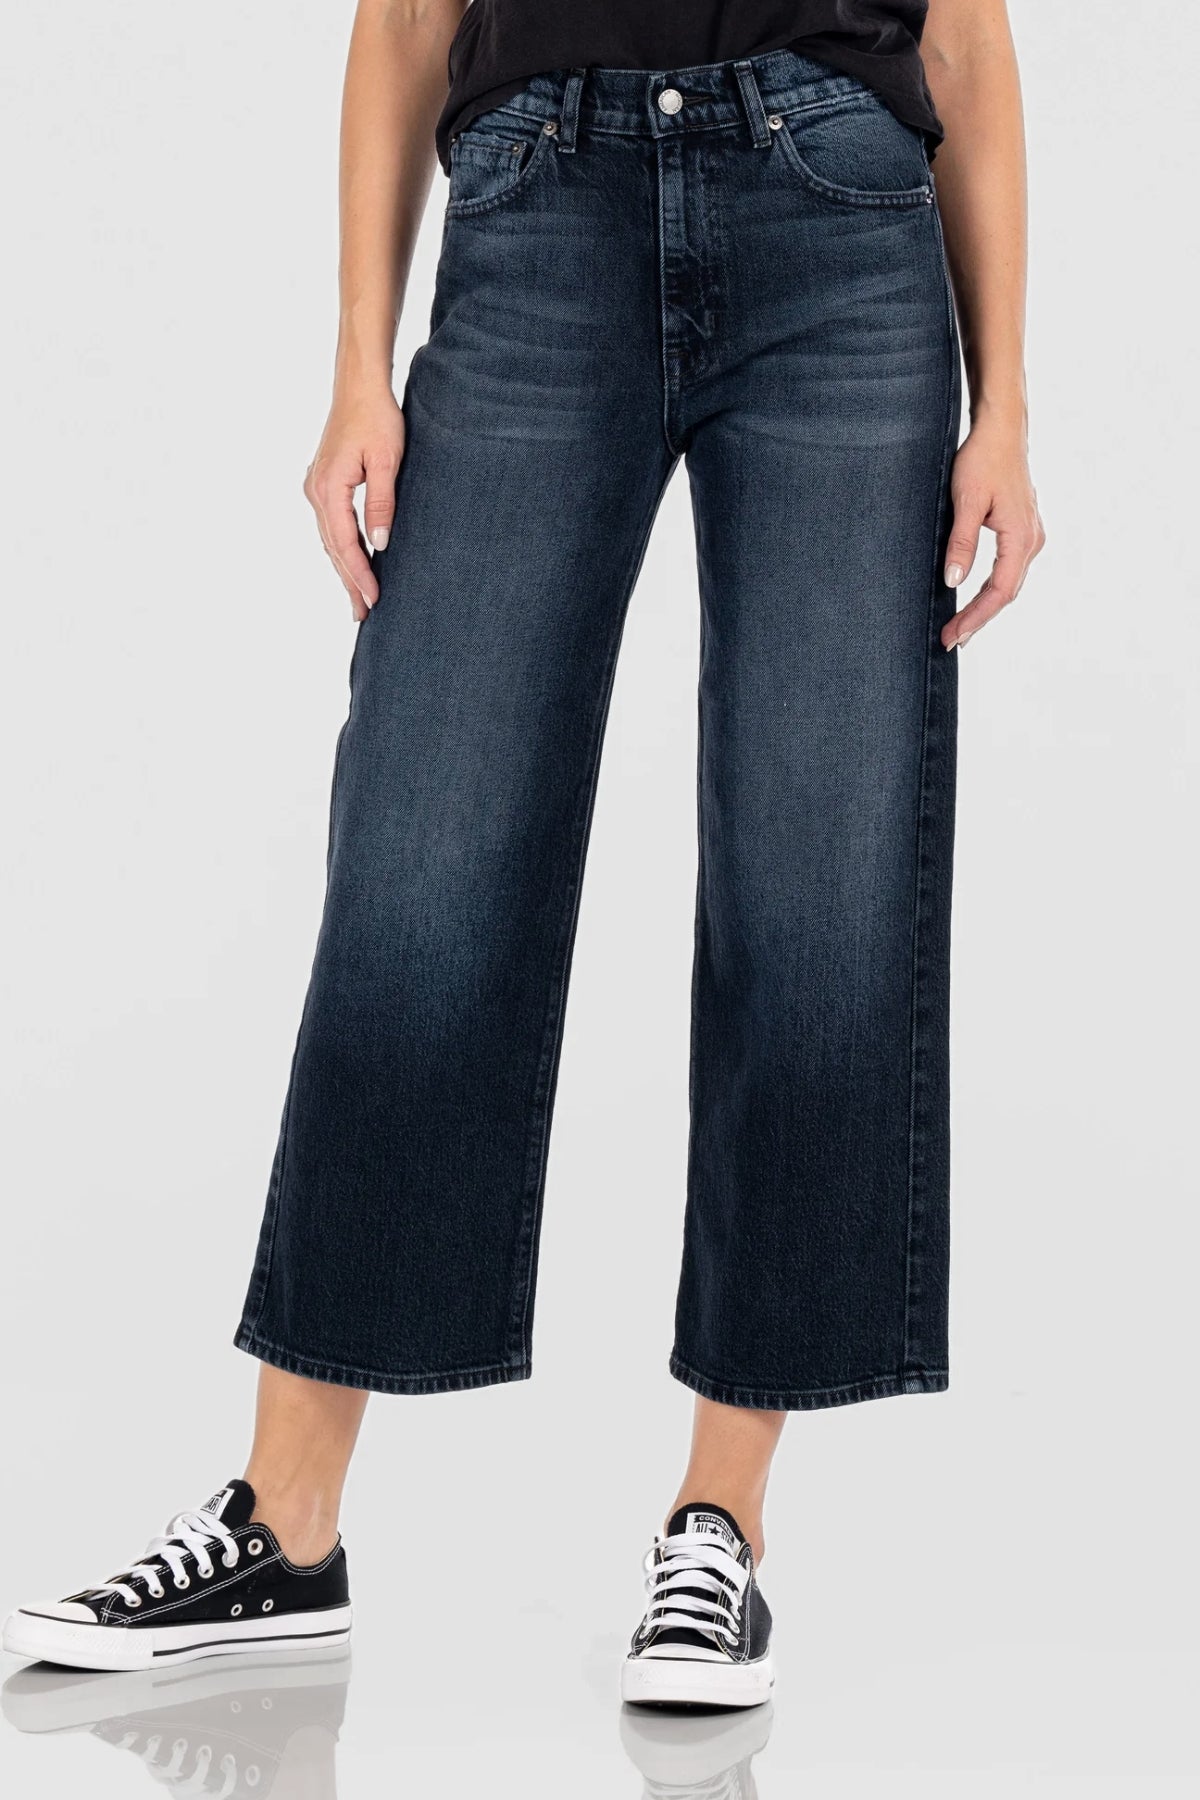 Savannah Jeans